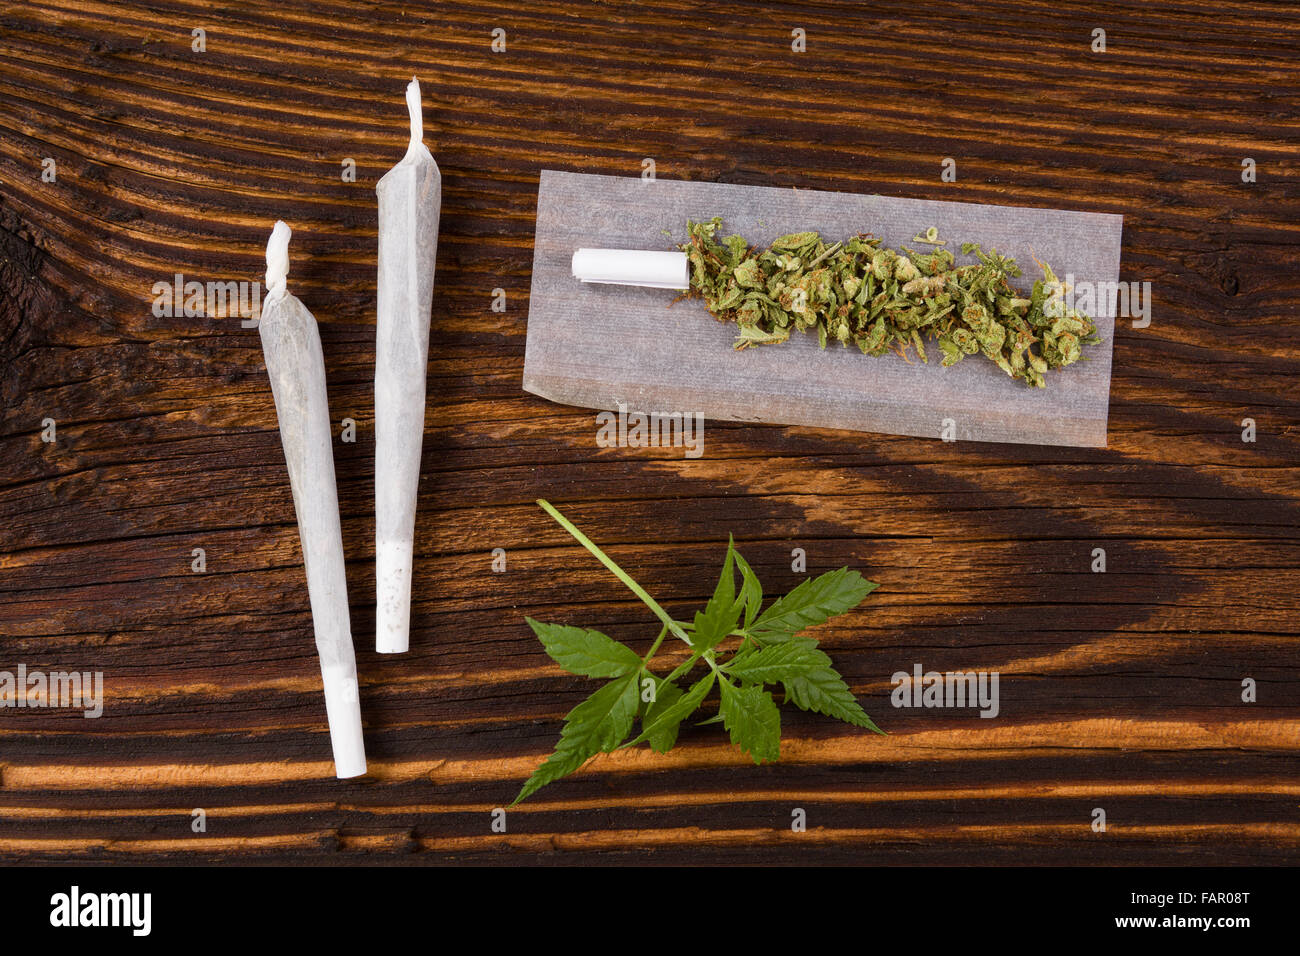 Marihuana-Hintergrund. Gemeinsame Cannabis, Knospen und Hanf Blätter auf Holztisch. Süchtig machende Droge oder alternative Medizin. Stockfoto